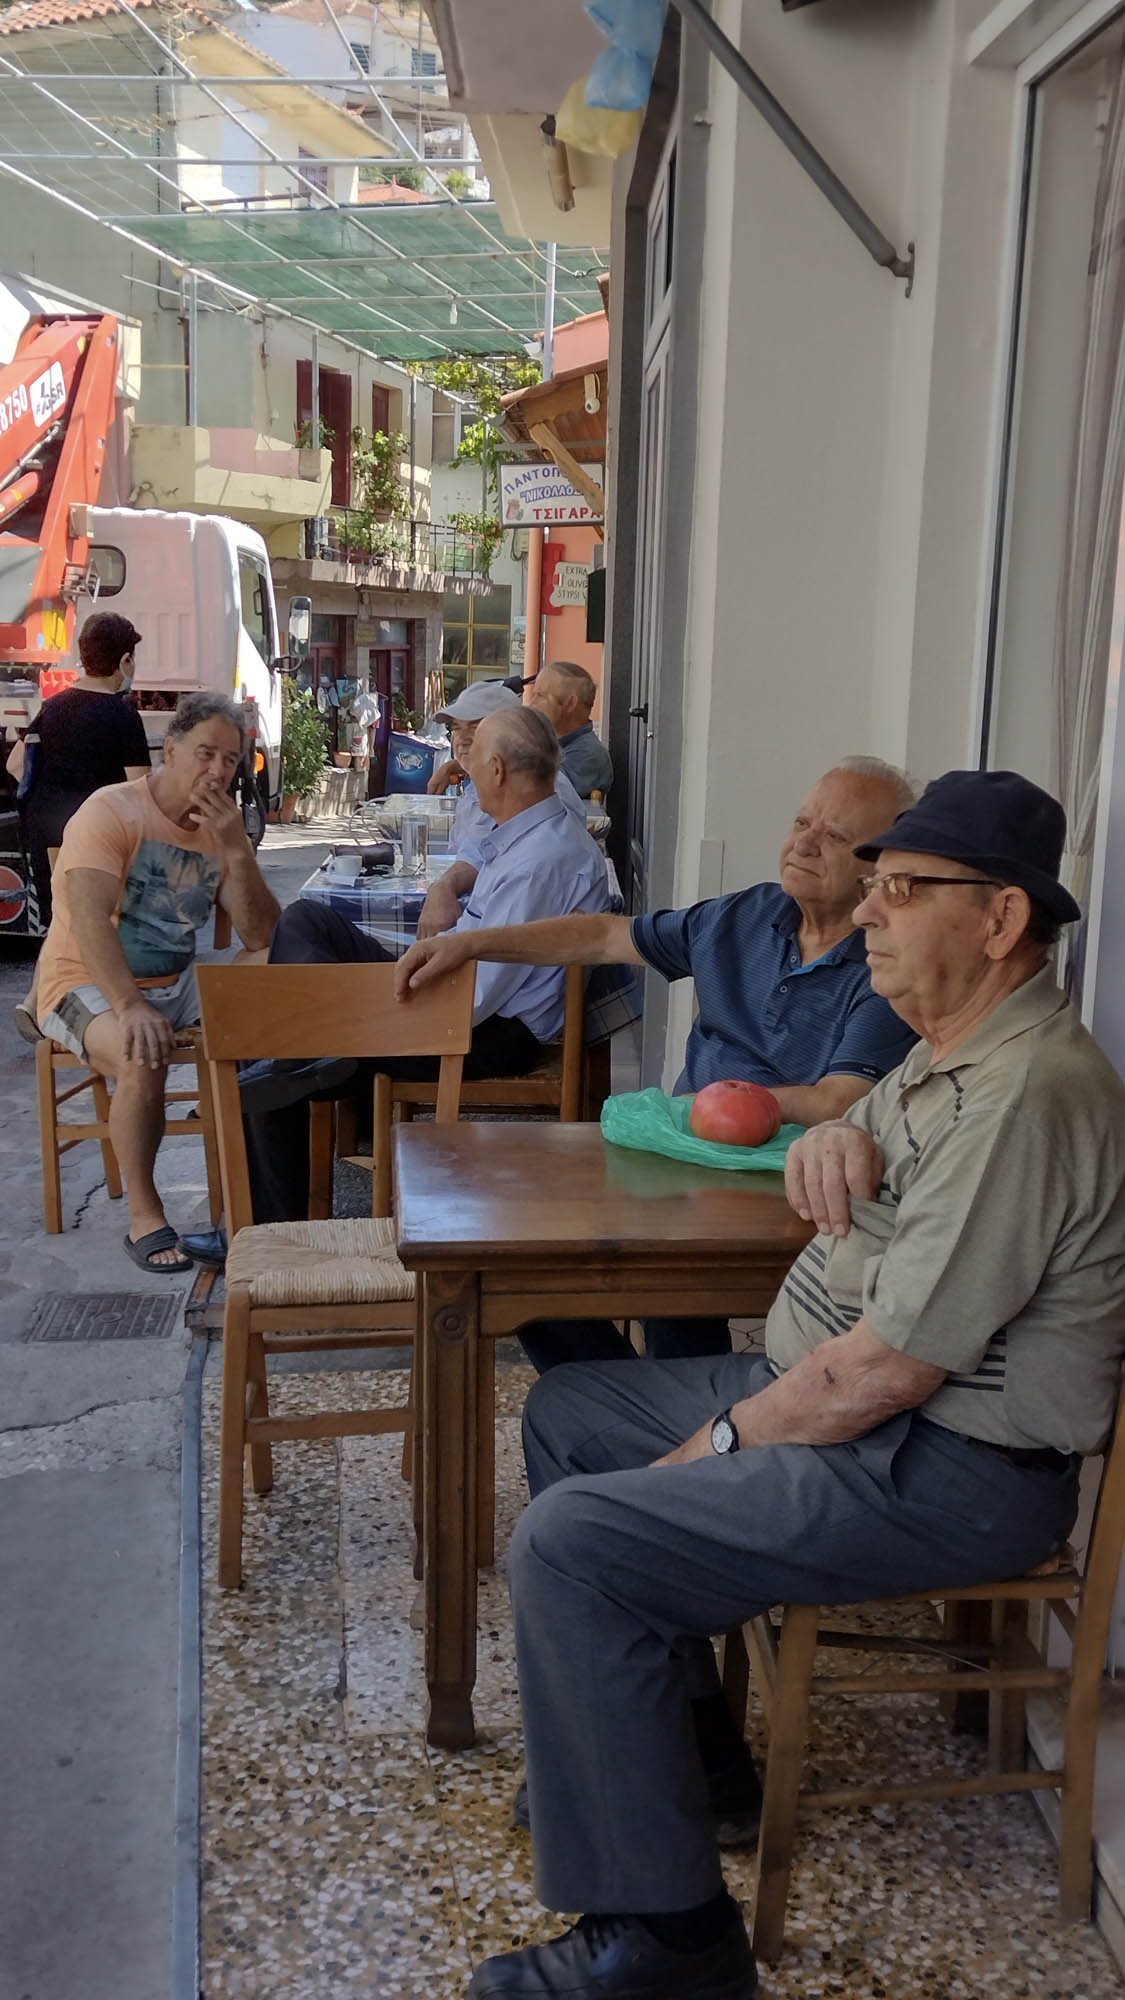 grecka ulica i ludzie w kawiarenkach